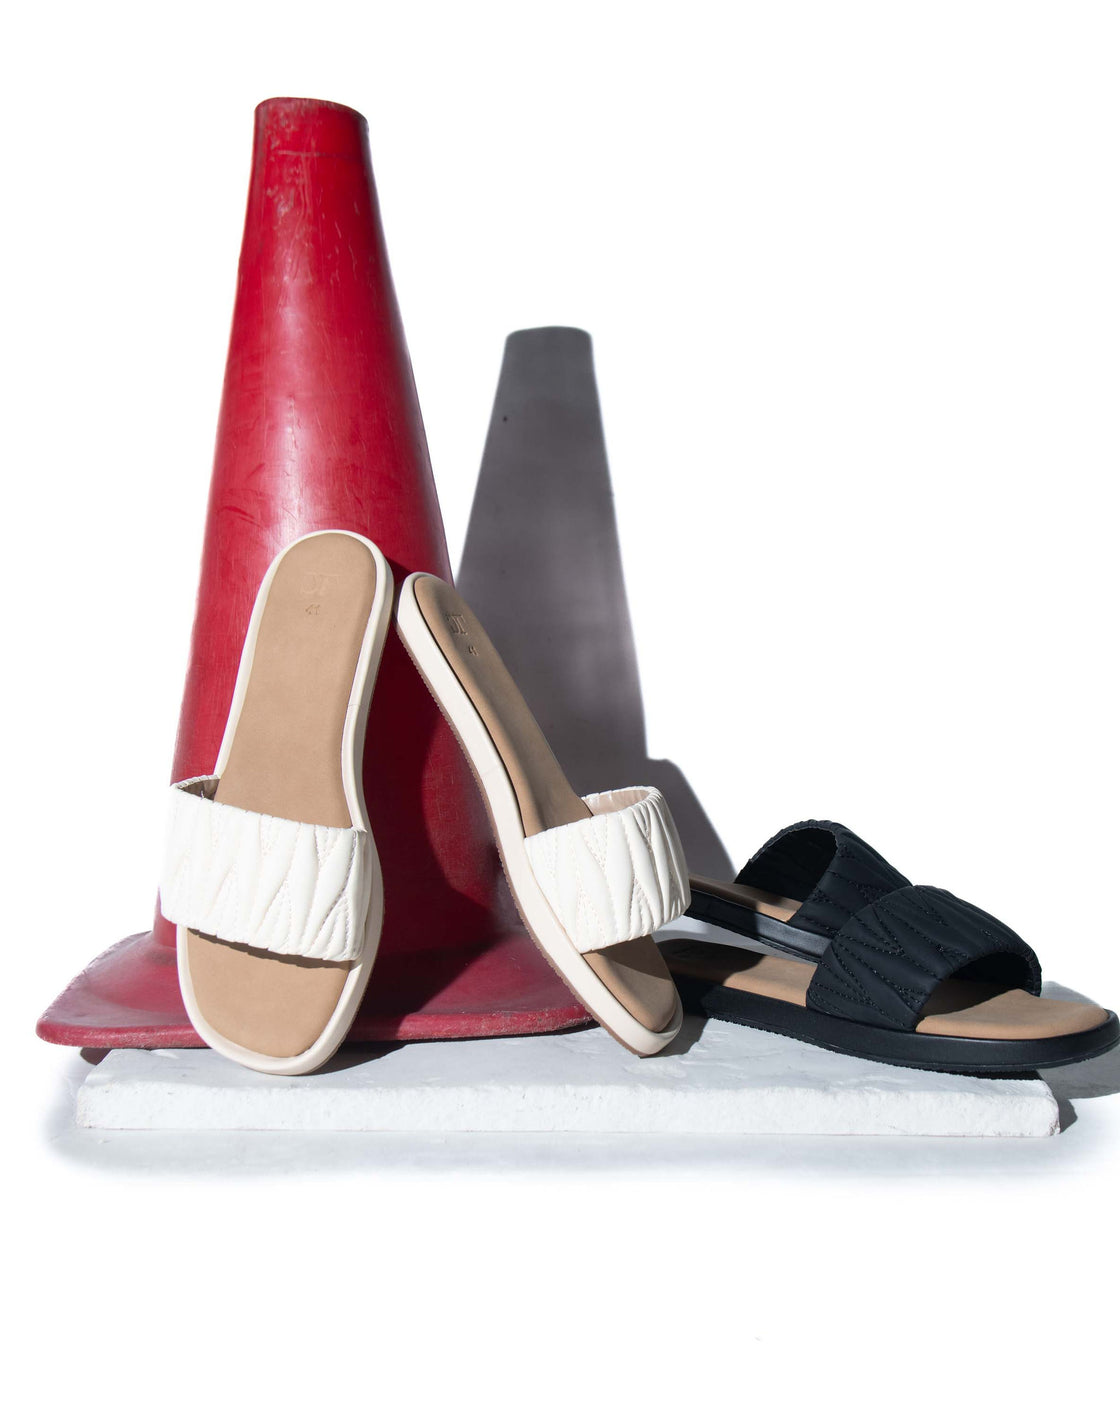 Flat Quilted - Slider Sandal